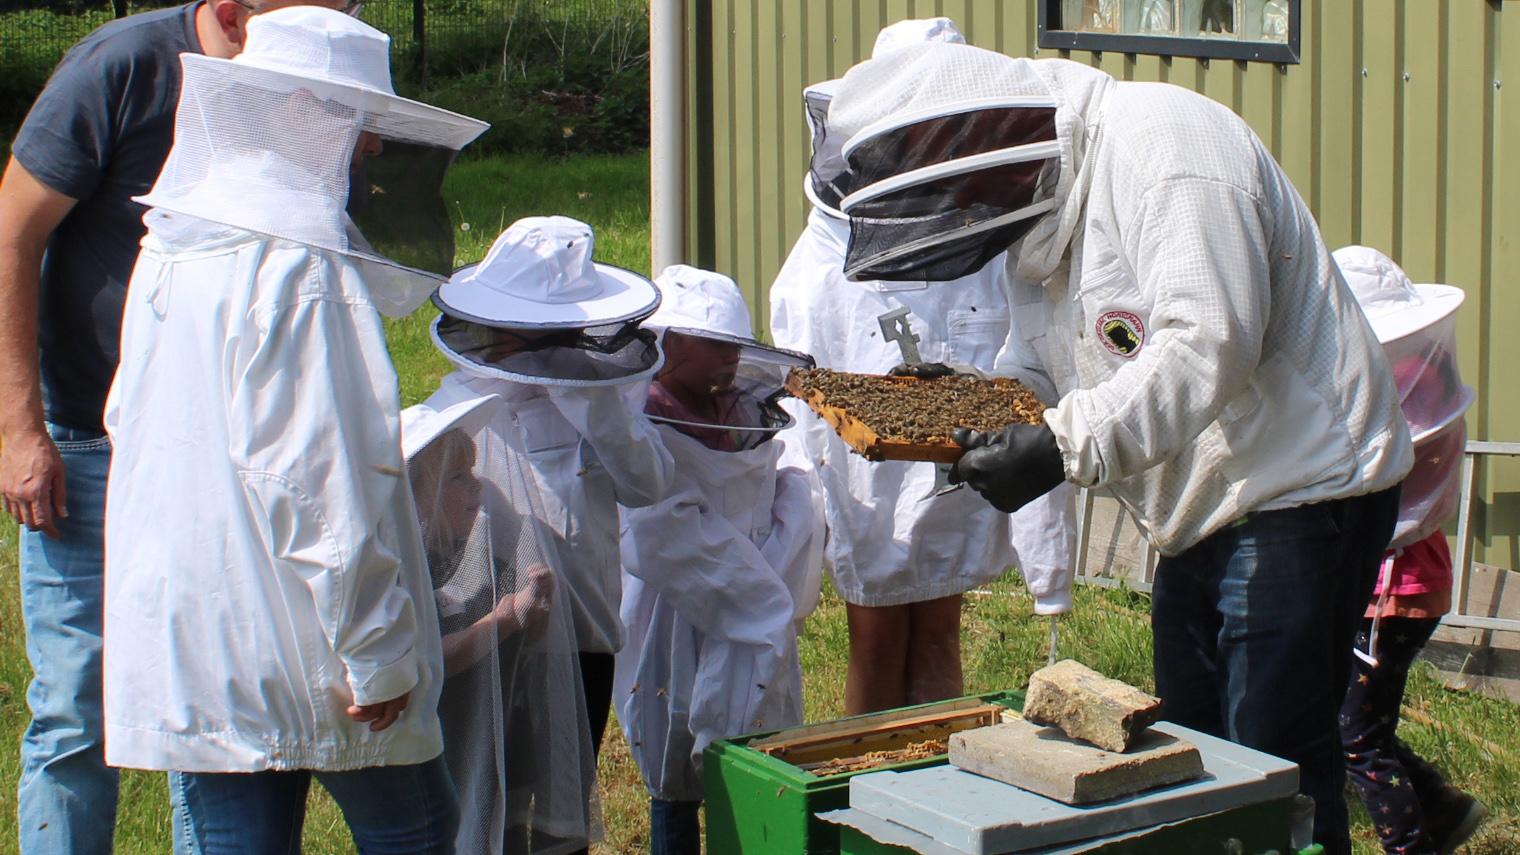 Imker Manfred Kochs zeigt einer Kleingruppe den Aufbau des Bienenstocks und die Zusammenarbeit im Bienenvolk. (c) BDSJ Aachen